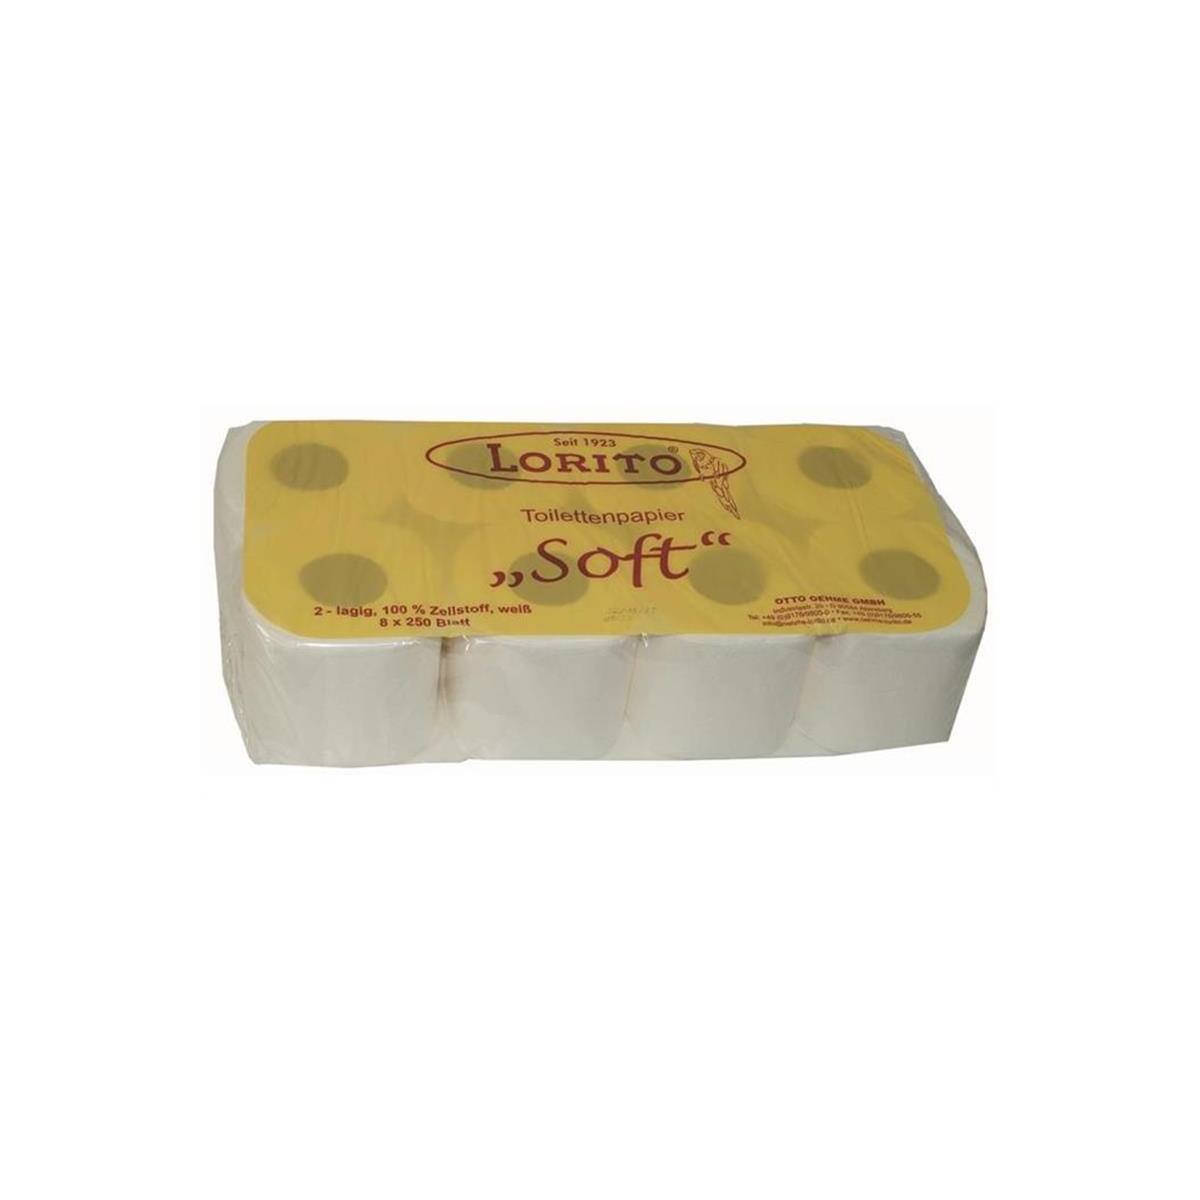 Lorito Toilettenpapier Klopapier Lorito Soft, 2-lagig